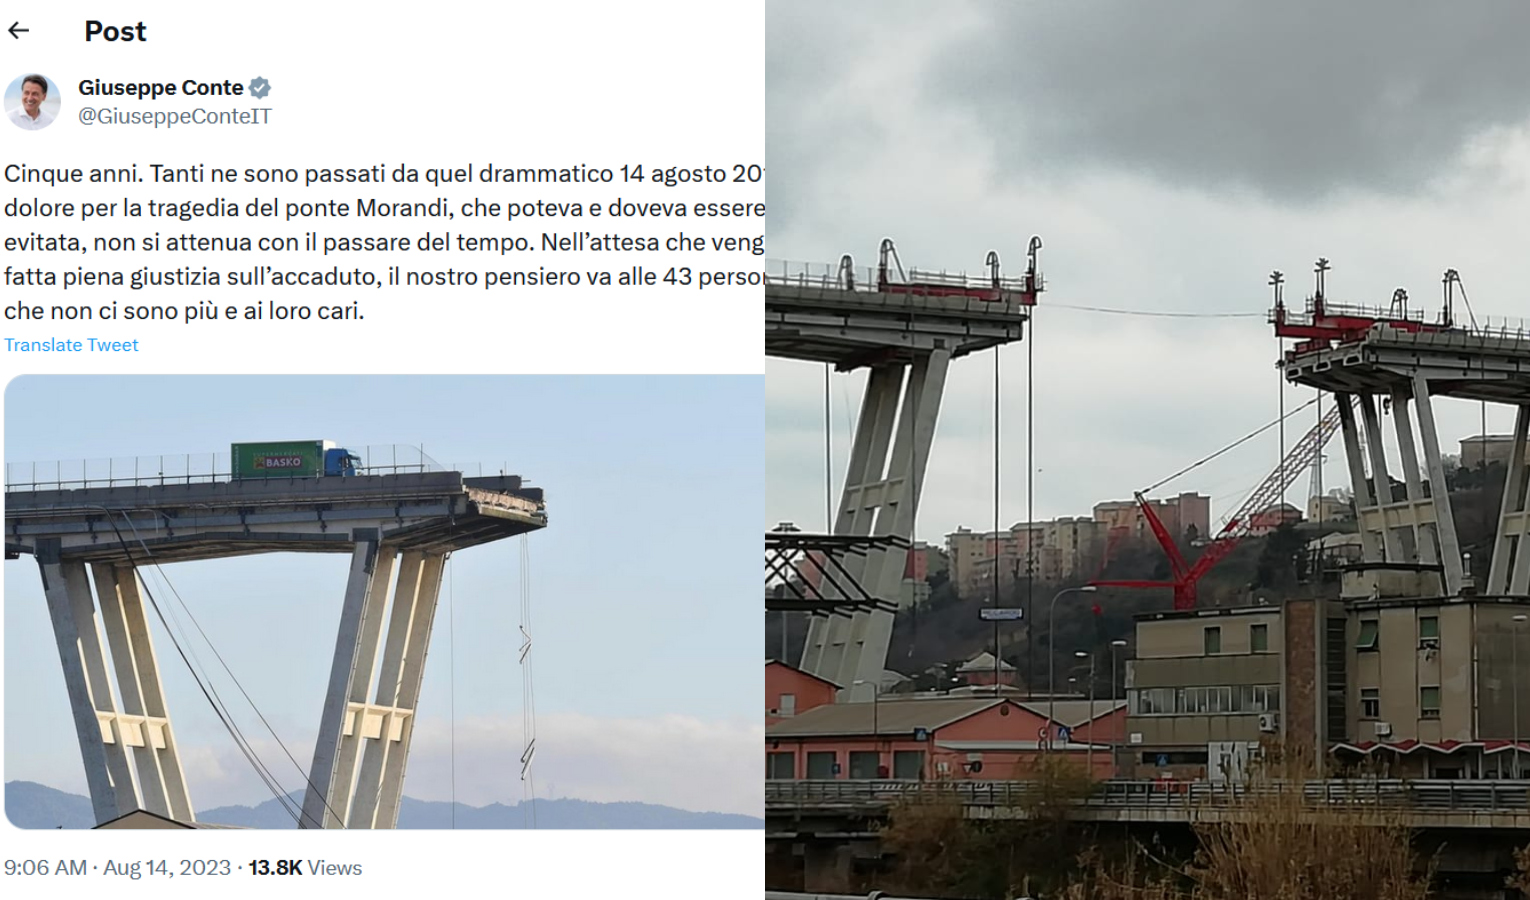 Cinque anni dal crollo di ponte Morandi, le parole dei politici sui social